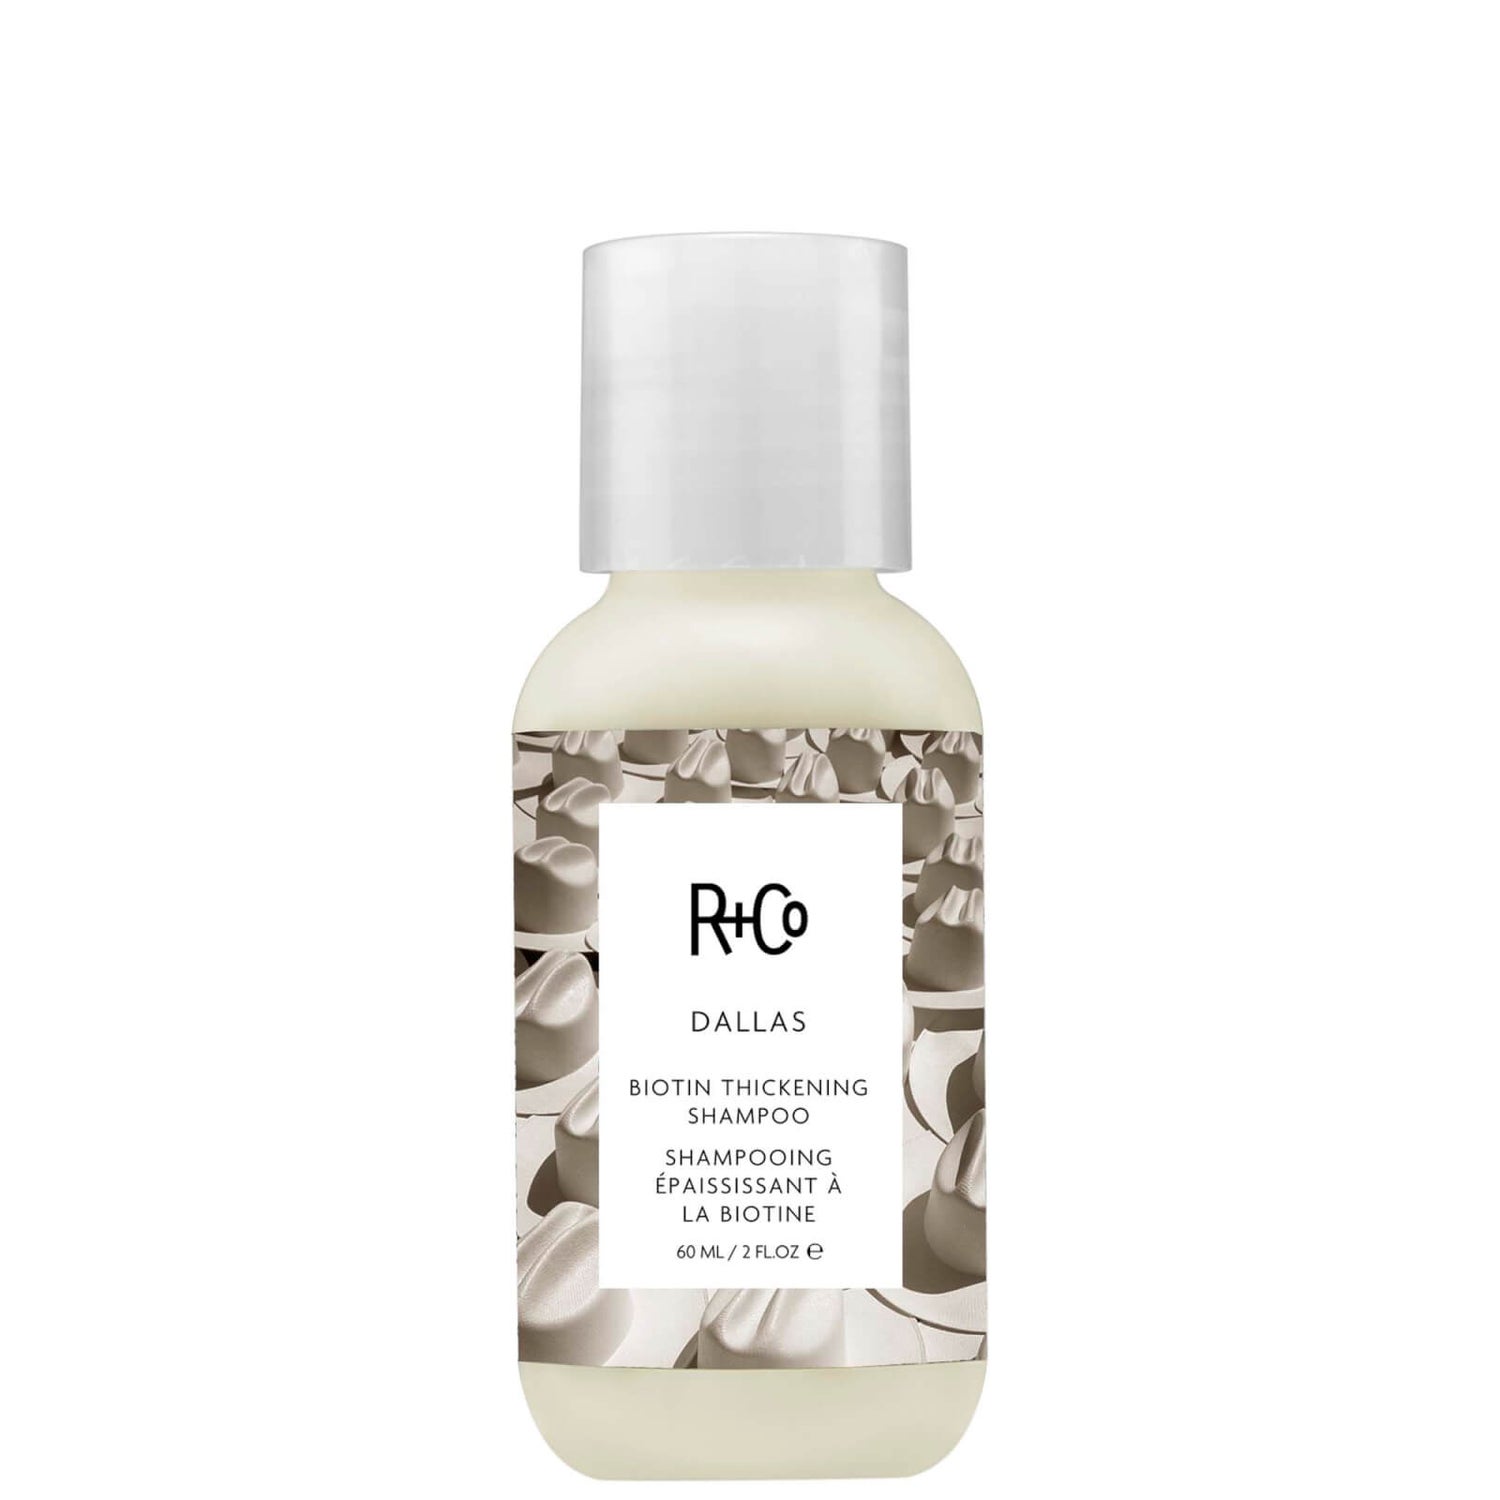 R+Co Dallas Biotin Thickening Shampoo Travel 60ml